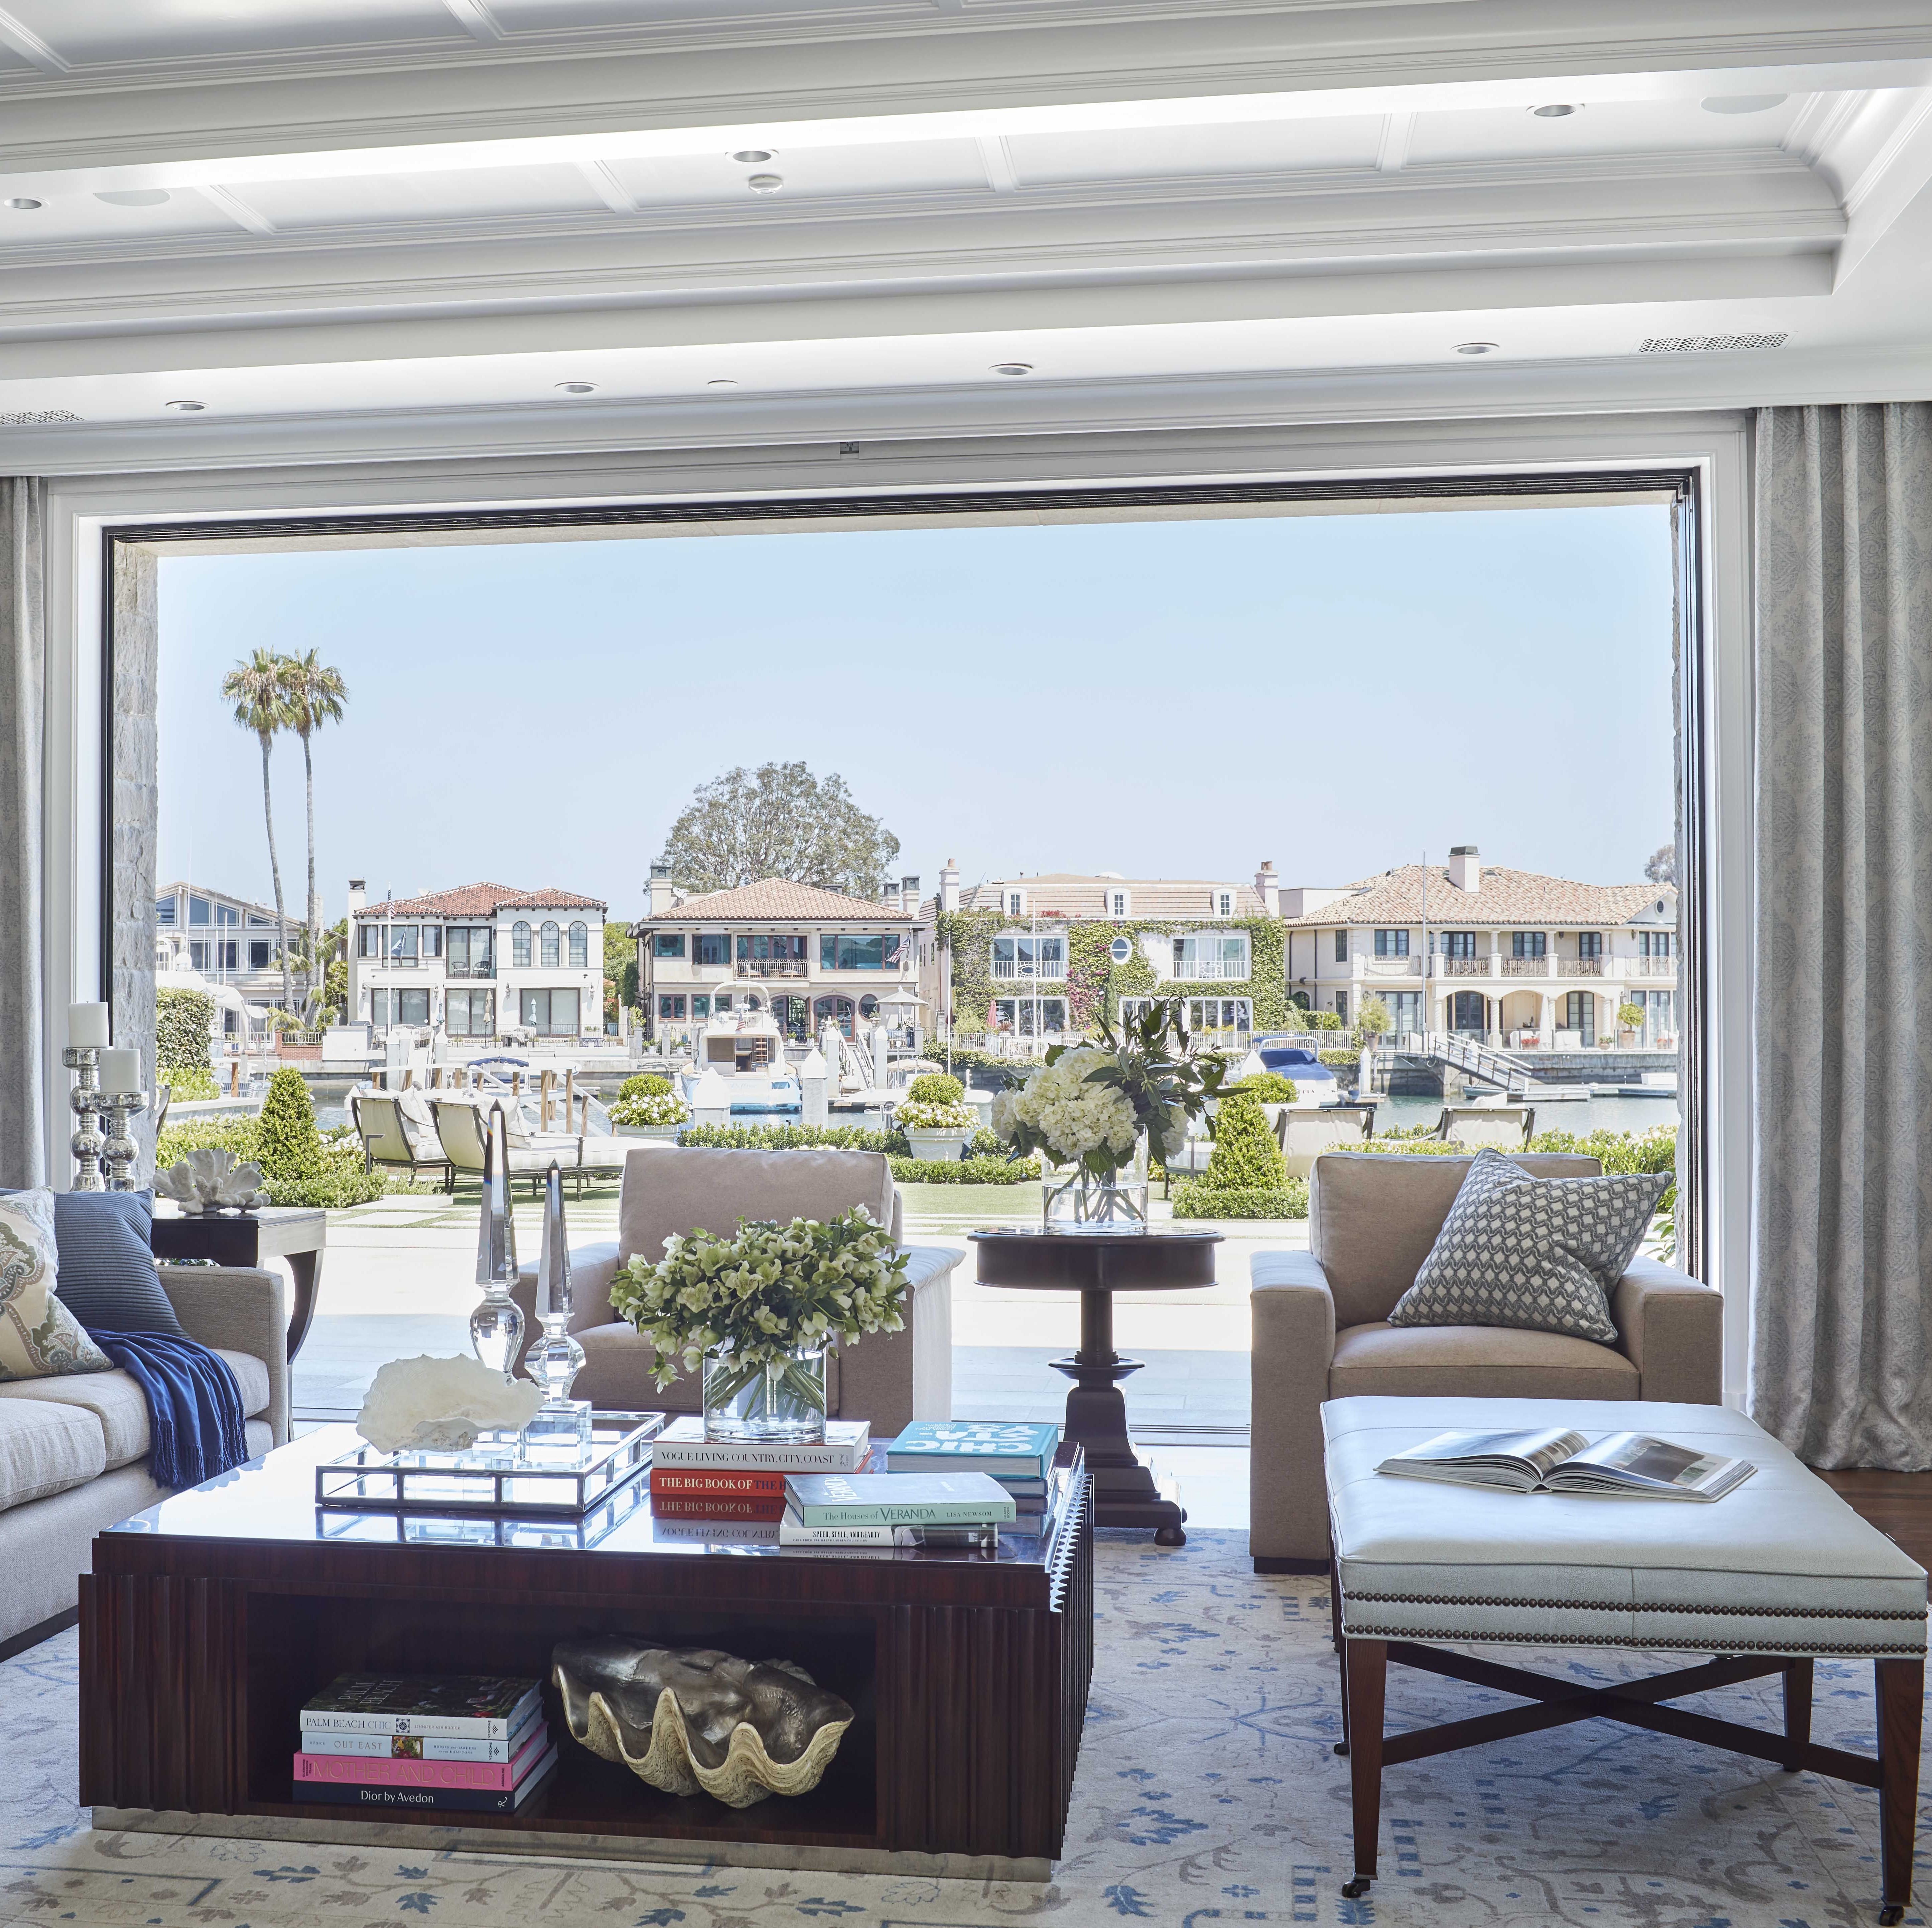 This California Home Has a Soaking Tub with Ocean Views